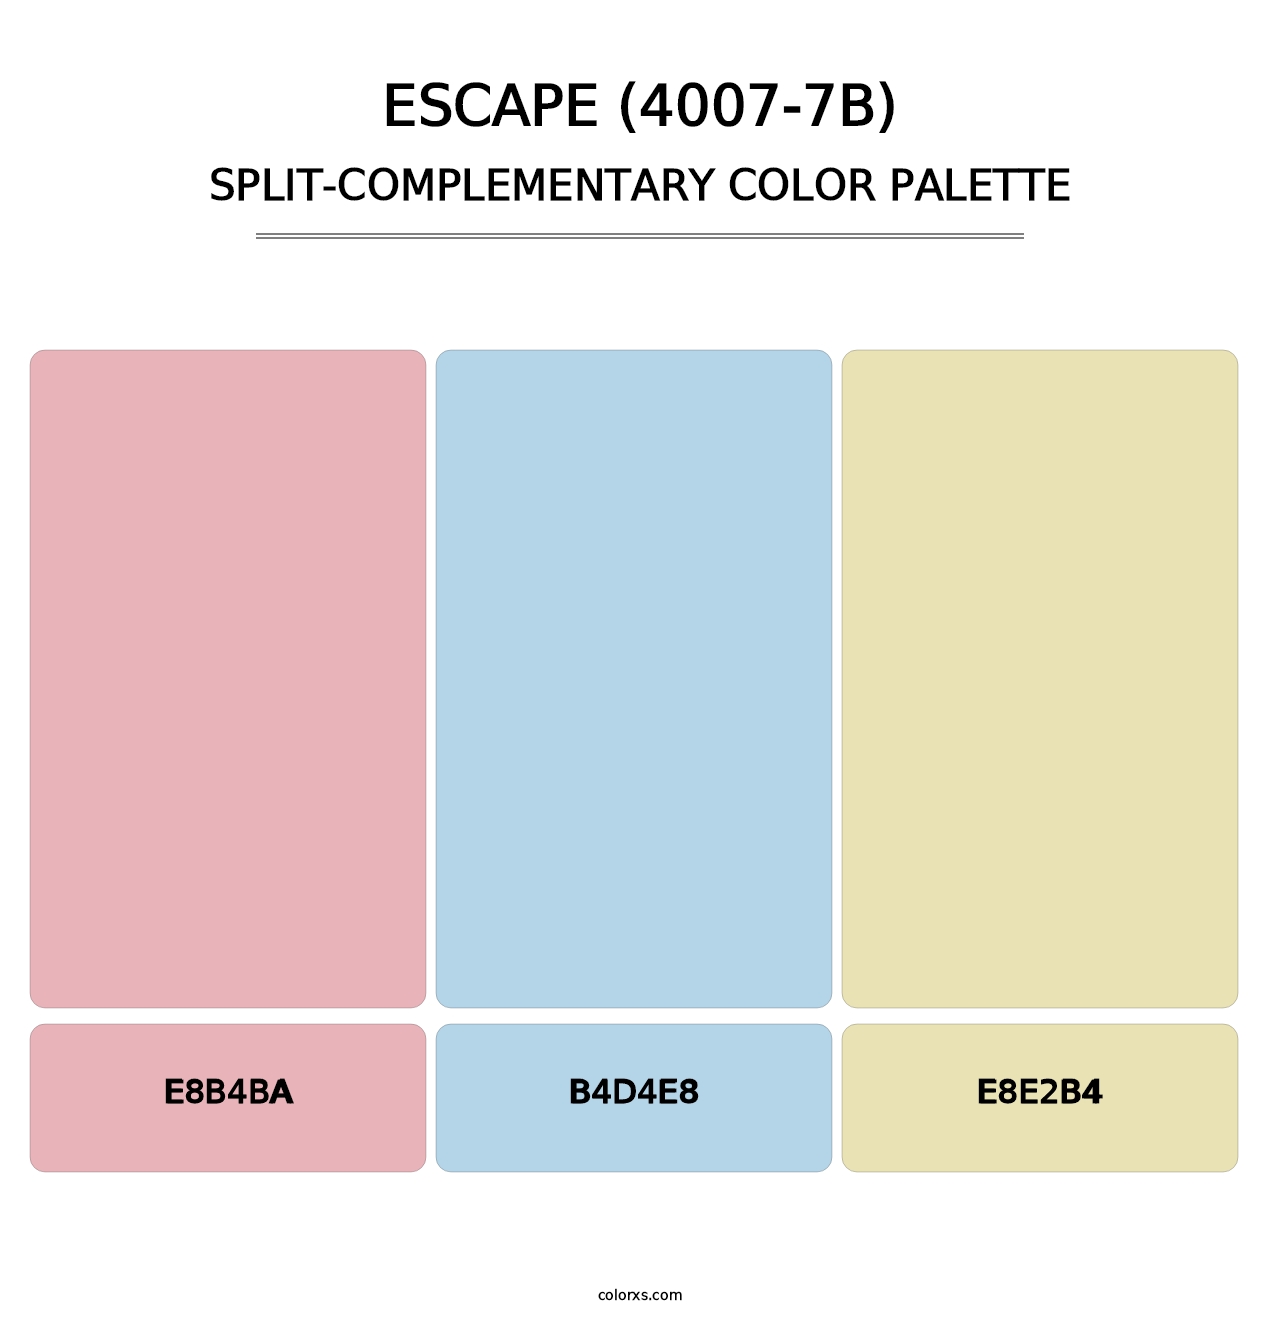 Escape (4007-7B) - Split-Complementary Color Palette